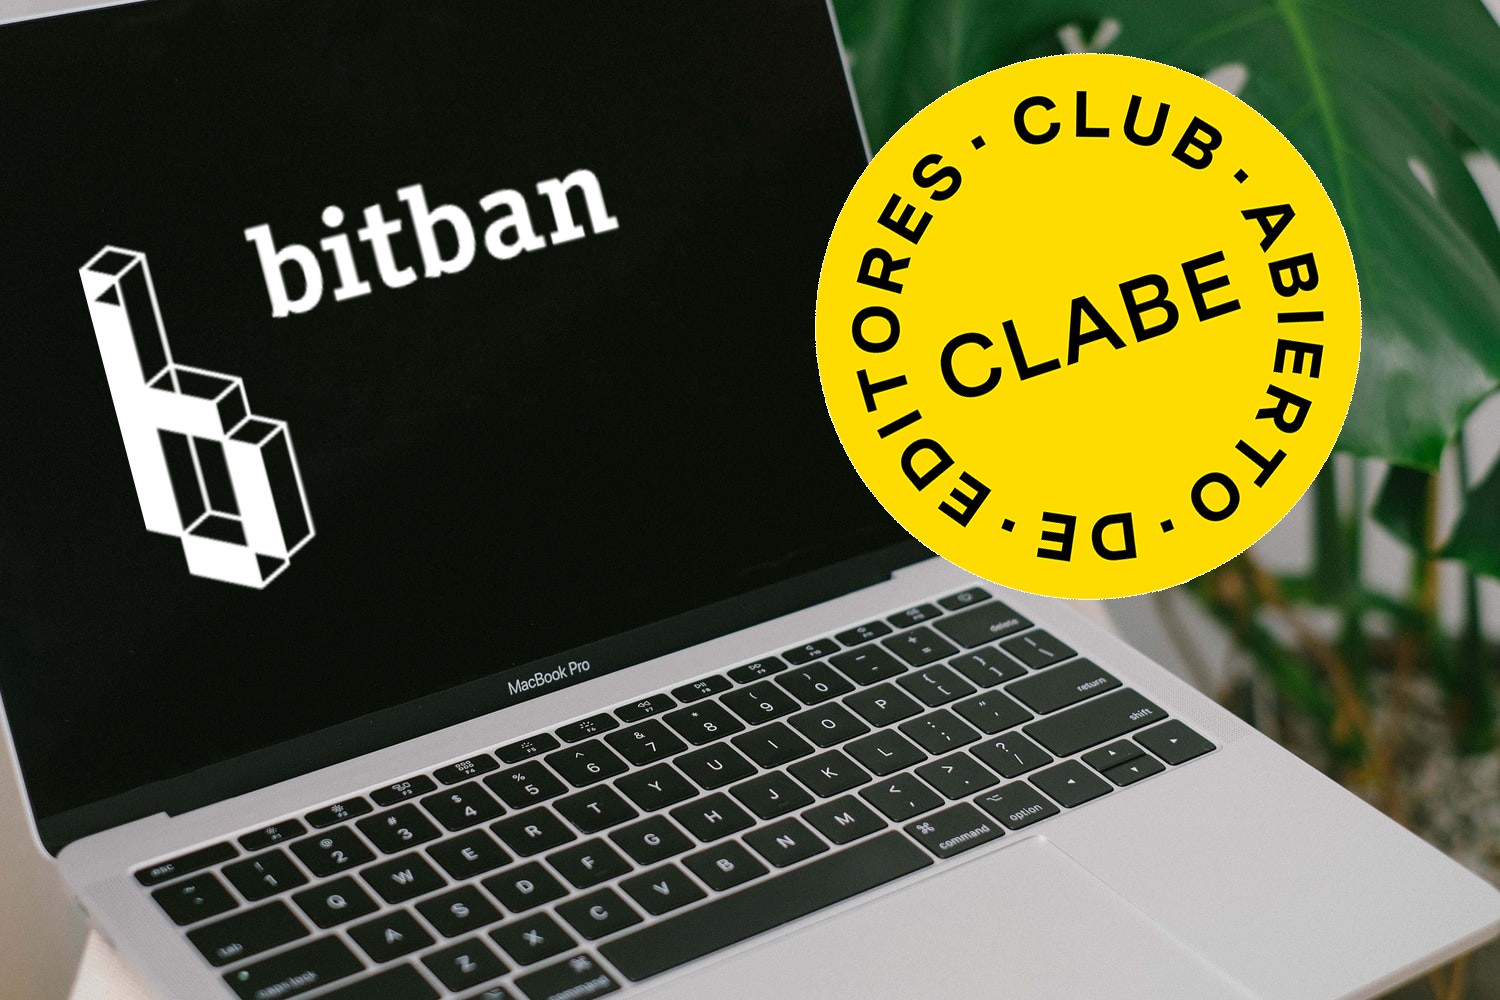 CLABE y Bitban logos en una laptop apagada